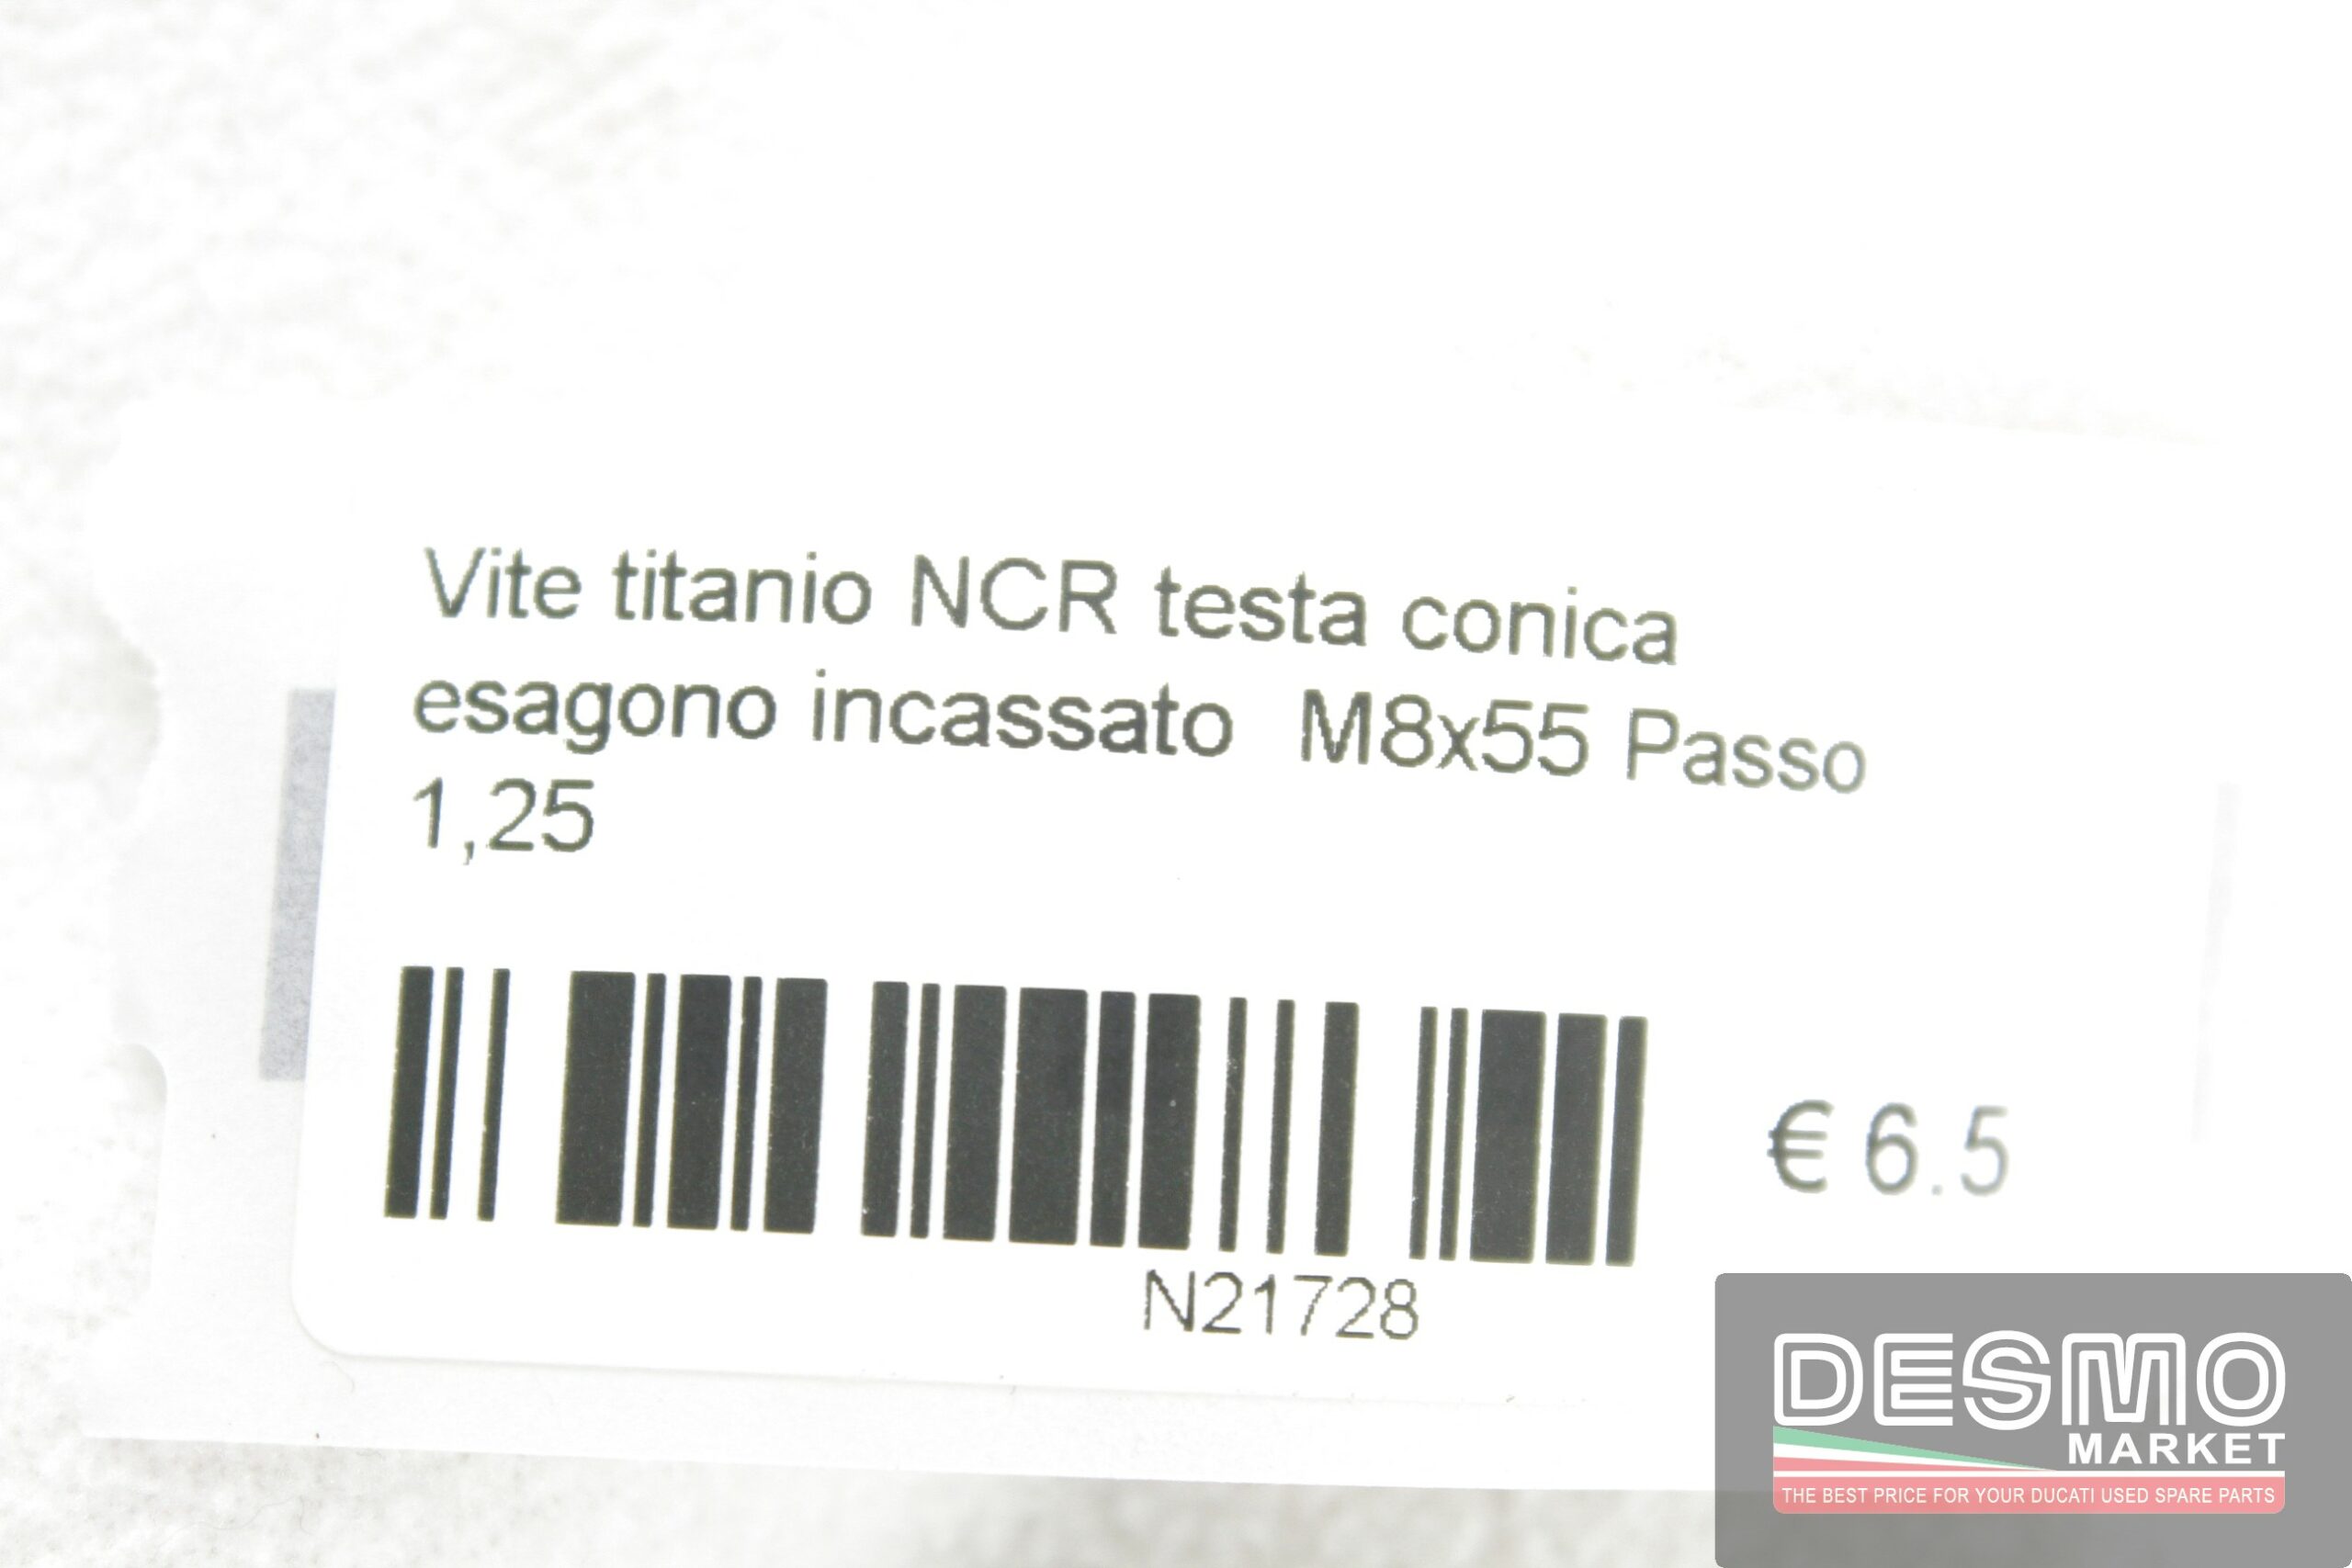 Vite titanio NCR testa conica esagono incassato  M8x55 Passo 1,25